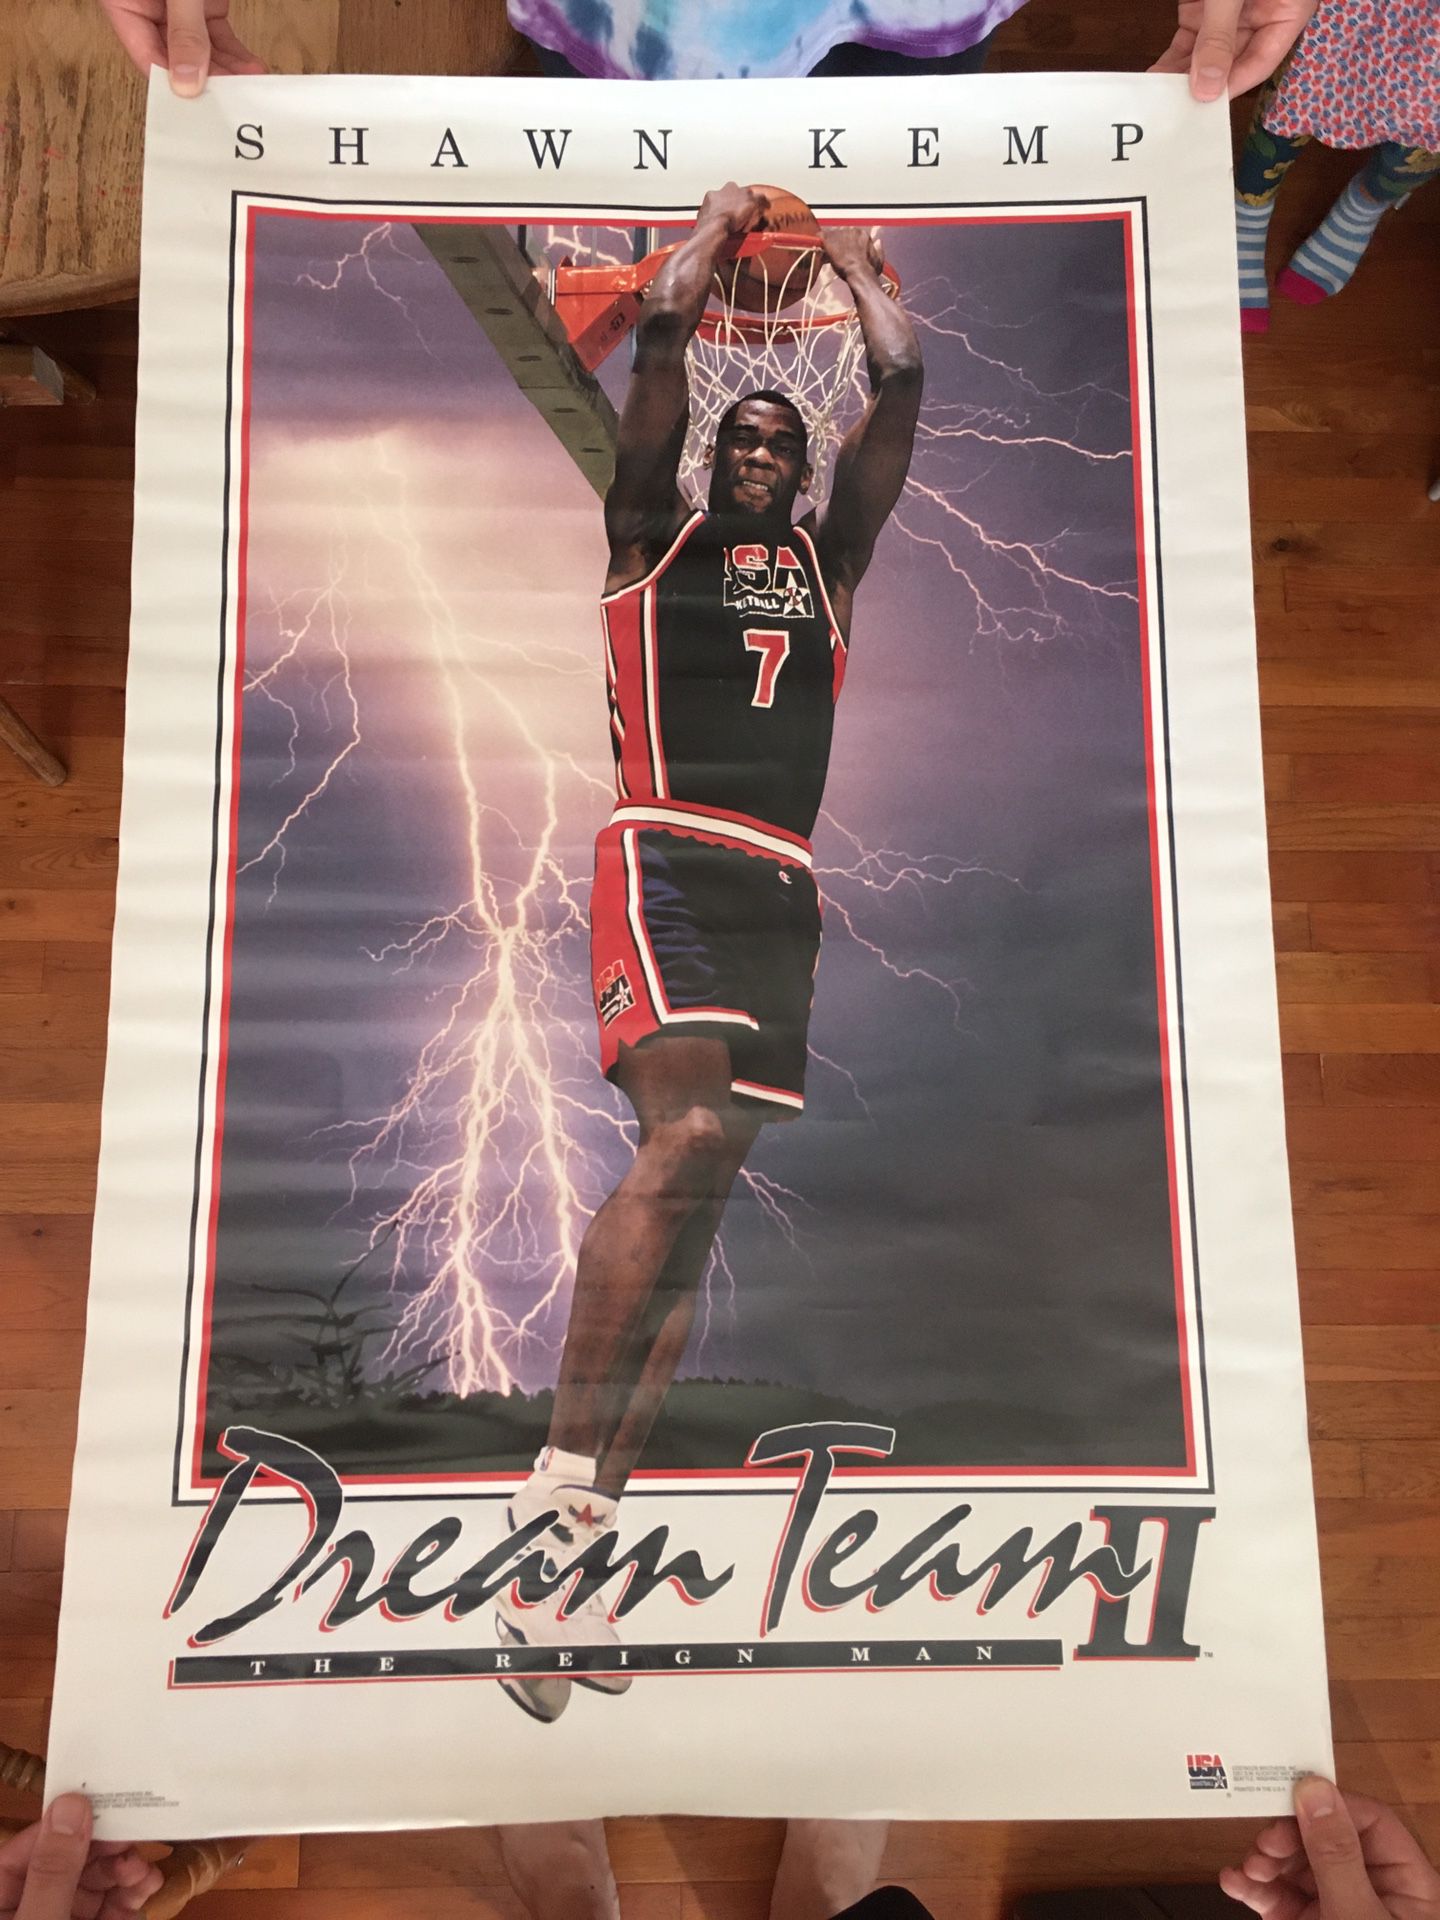 Shawn Kemp Dream Team 2 Poster